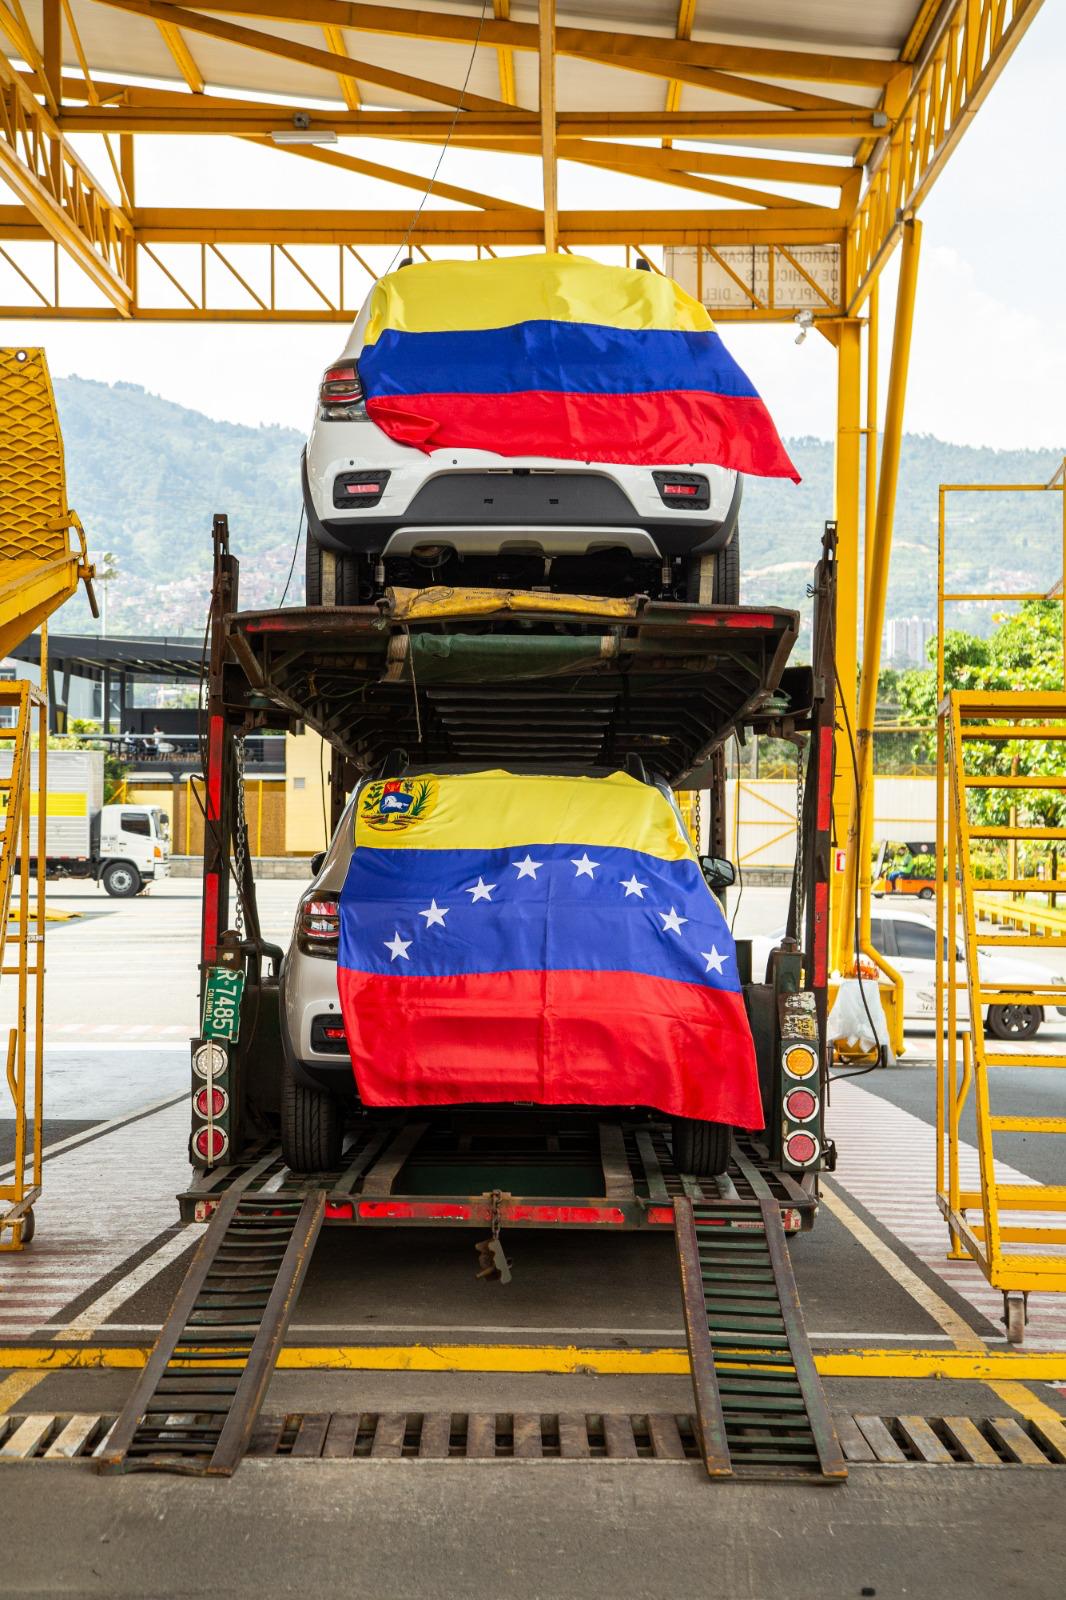 Renault Sofasa y su misión por conquistar el mercado automotor de Venzuela - Renault Sofasa le apuesta al mercado extranjero y empezó a exportar carros a Venezuela